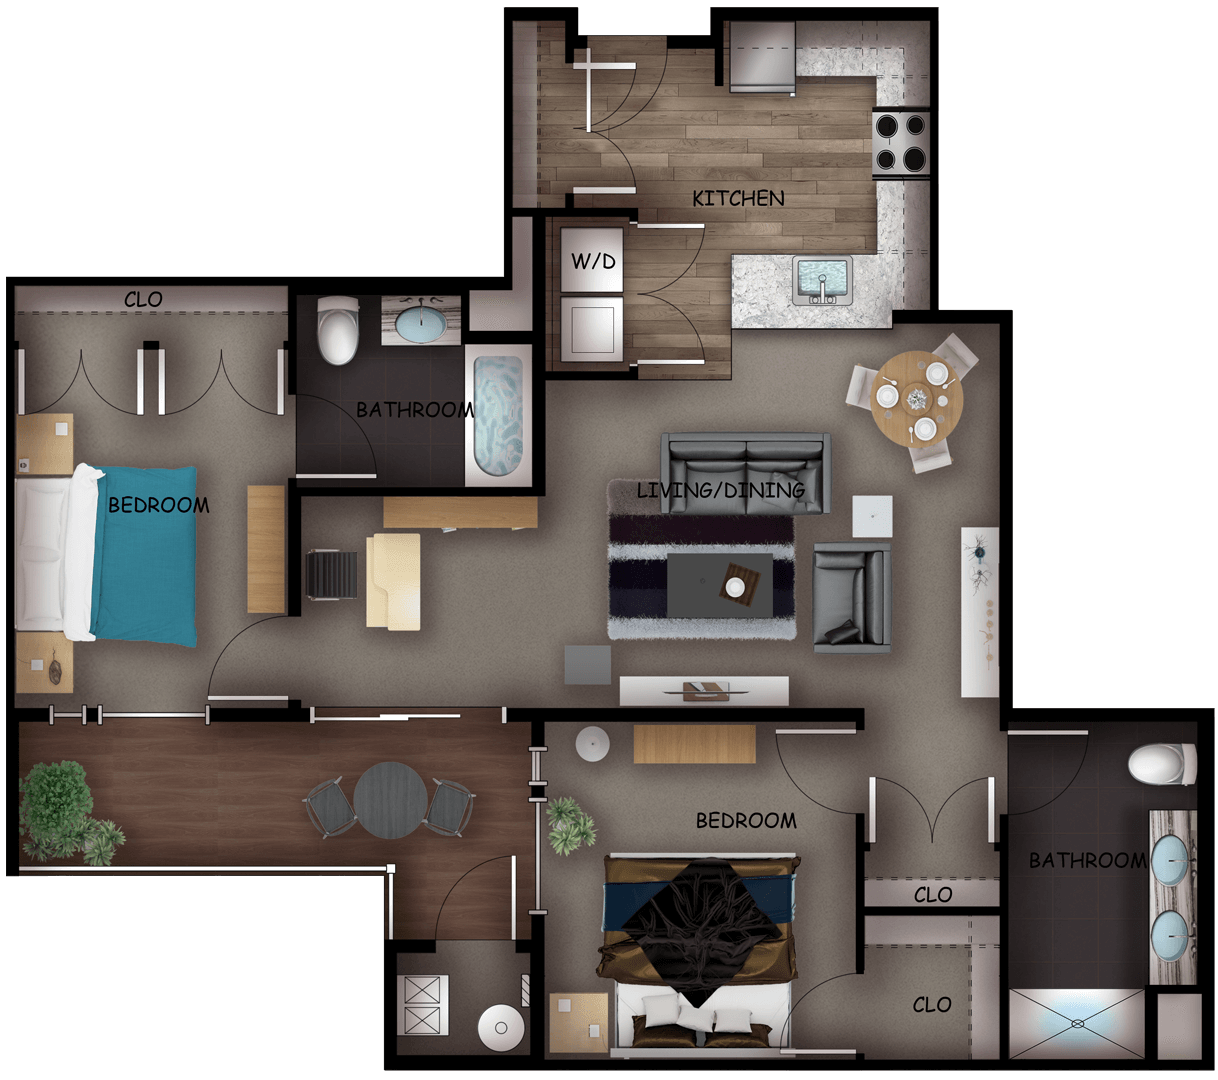 Luxury 2 bedroom floor plan in Secaucus, NJ apartment